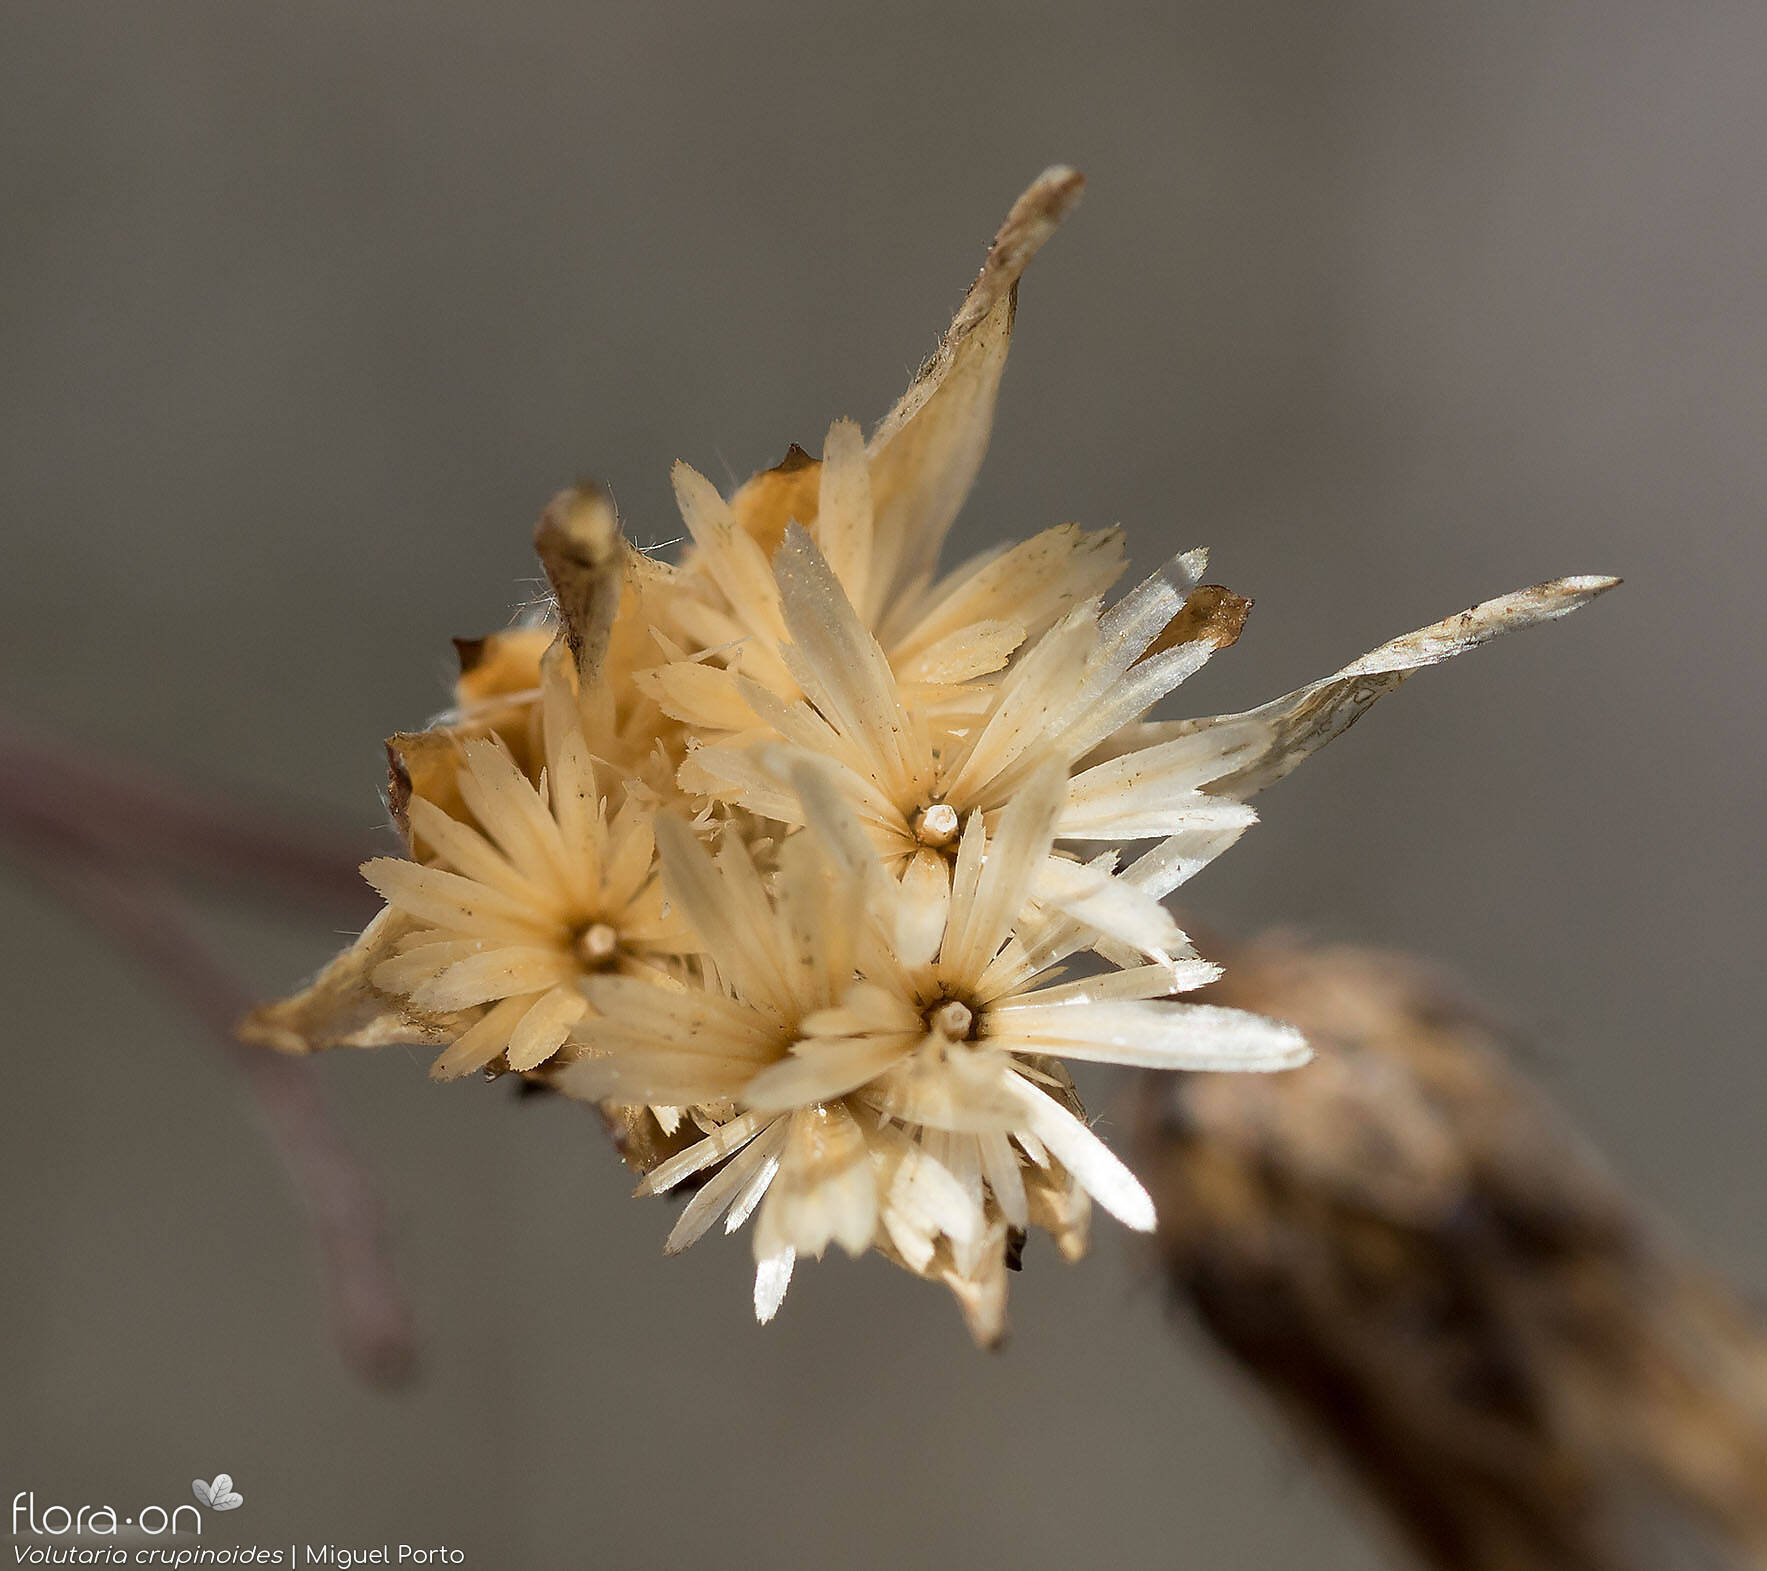 Volutaria crupinoides - Capítulo frutífero | Miguel Porto; CC BY-NC 4.0